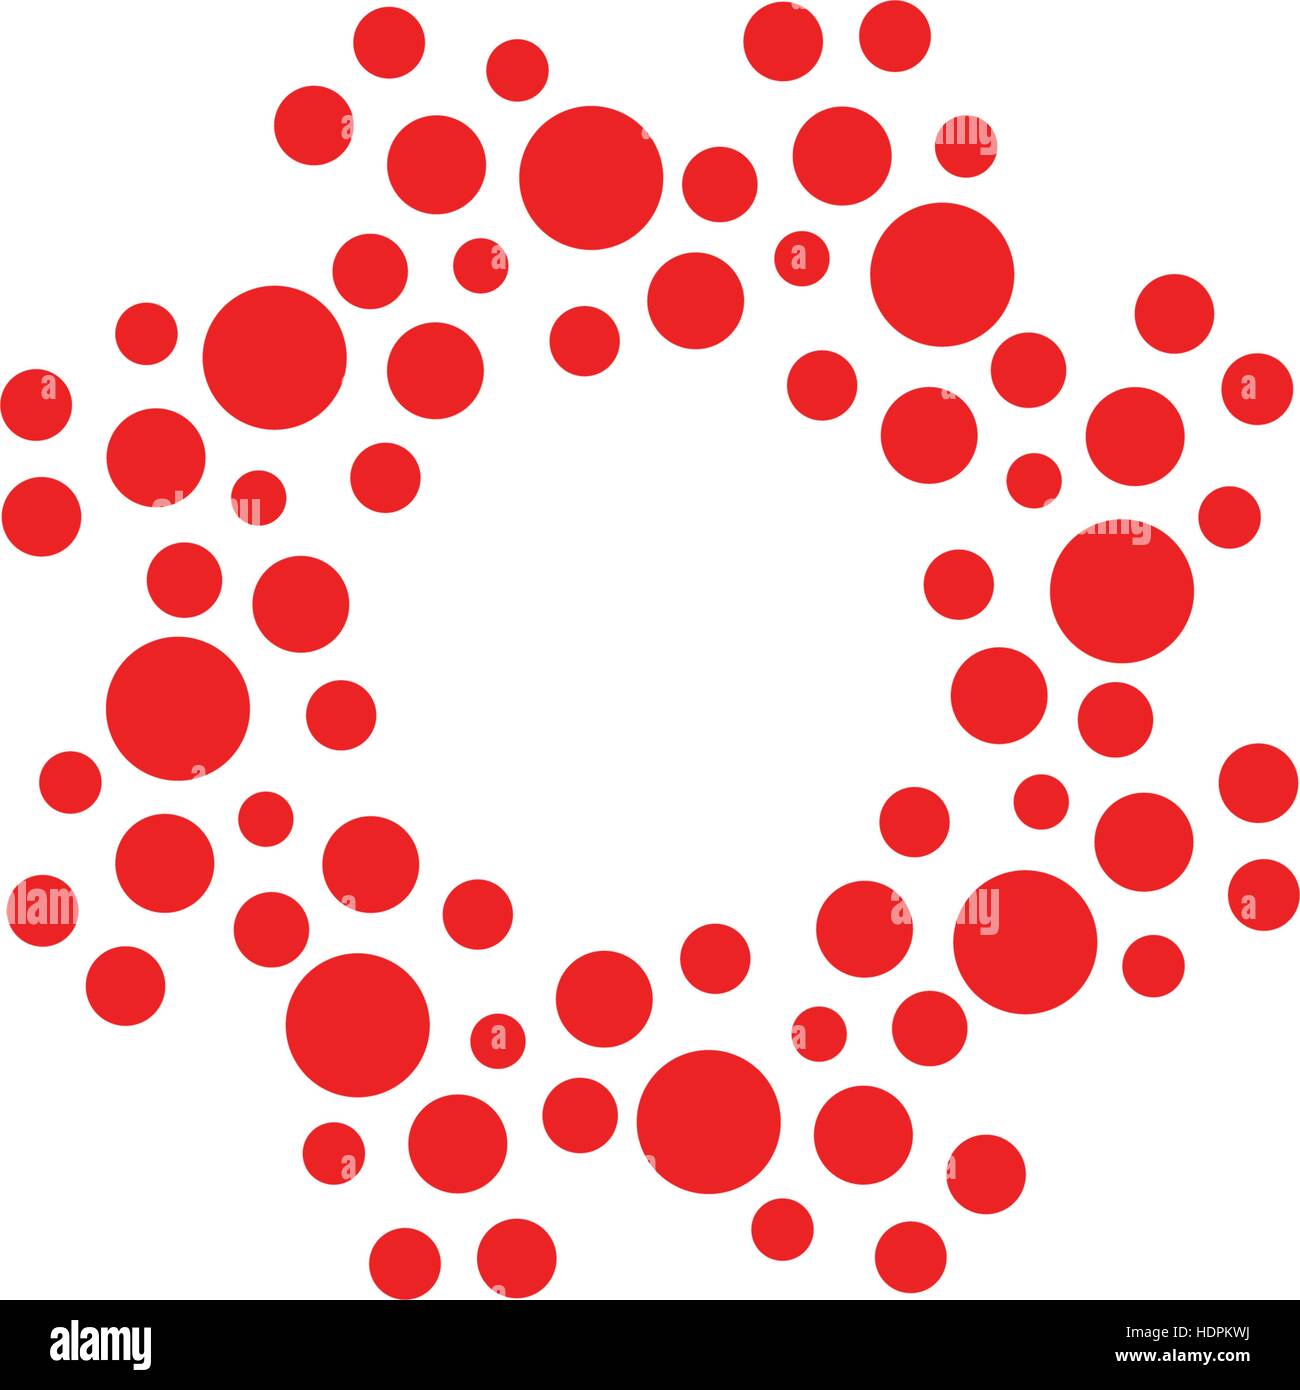 Abstrakt Kreis Logo. Ungewöhnliche gepunktete Runde isolierte Chem Logo. Virus-Symbol. Rote Sonne. Symbolblume. Spiral-Zeichen. Vektorgrafik Keime. Stock Vektor